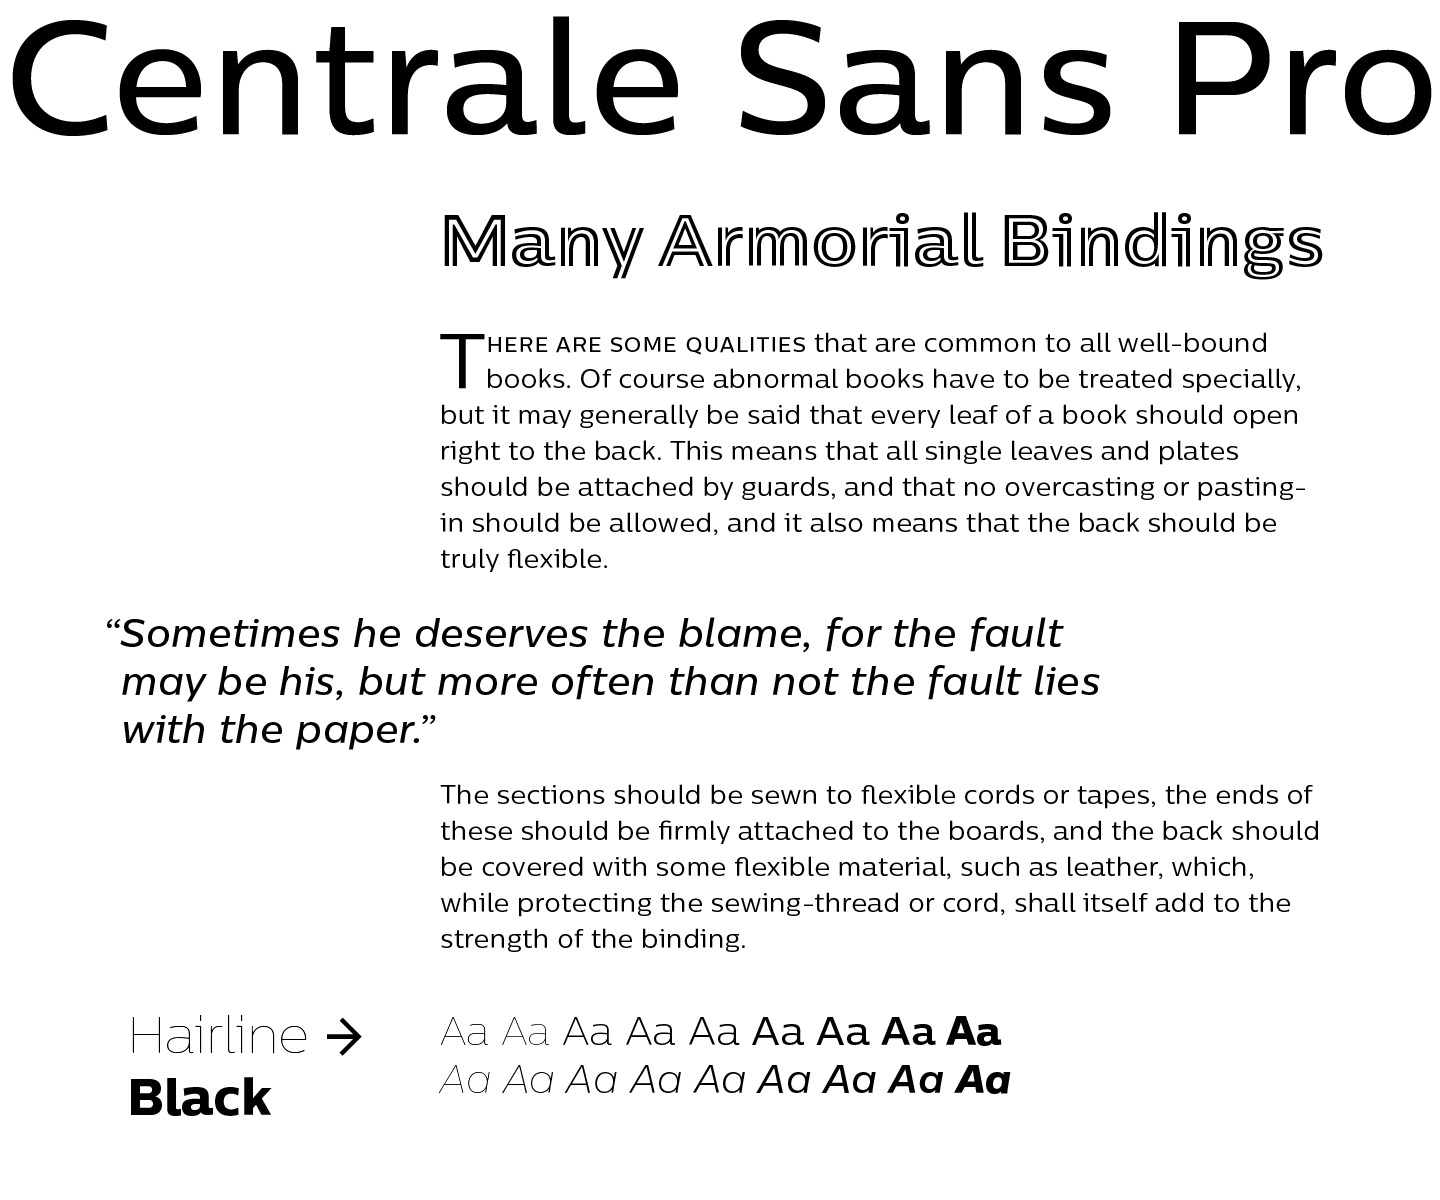 Centrale Sans Pro